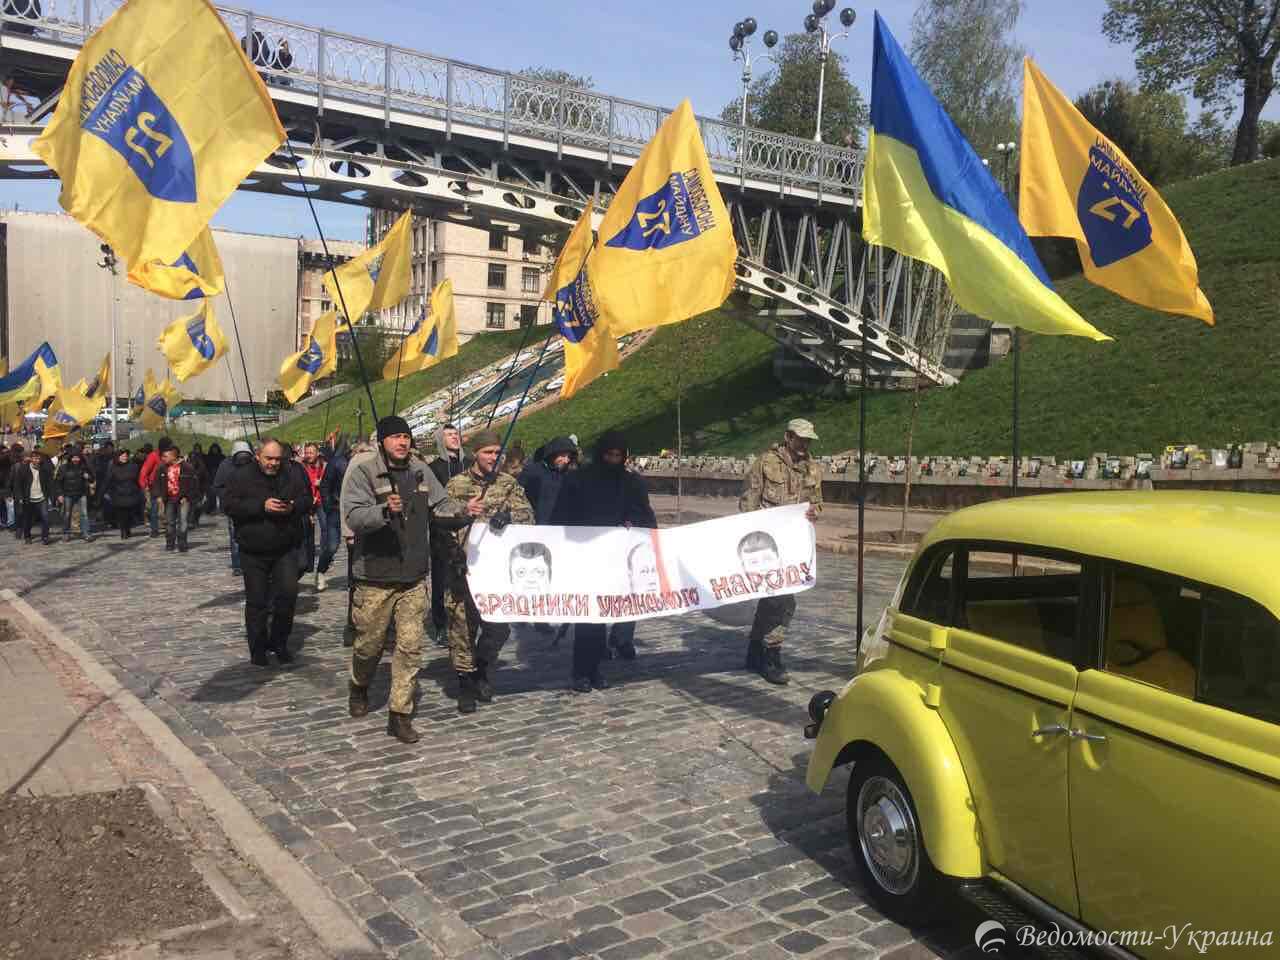 Под АП уроженец крымскотатарского народа выступил против власти: "За что вы меня уничтожаете?" (видео)